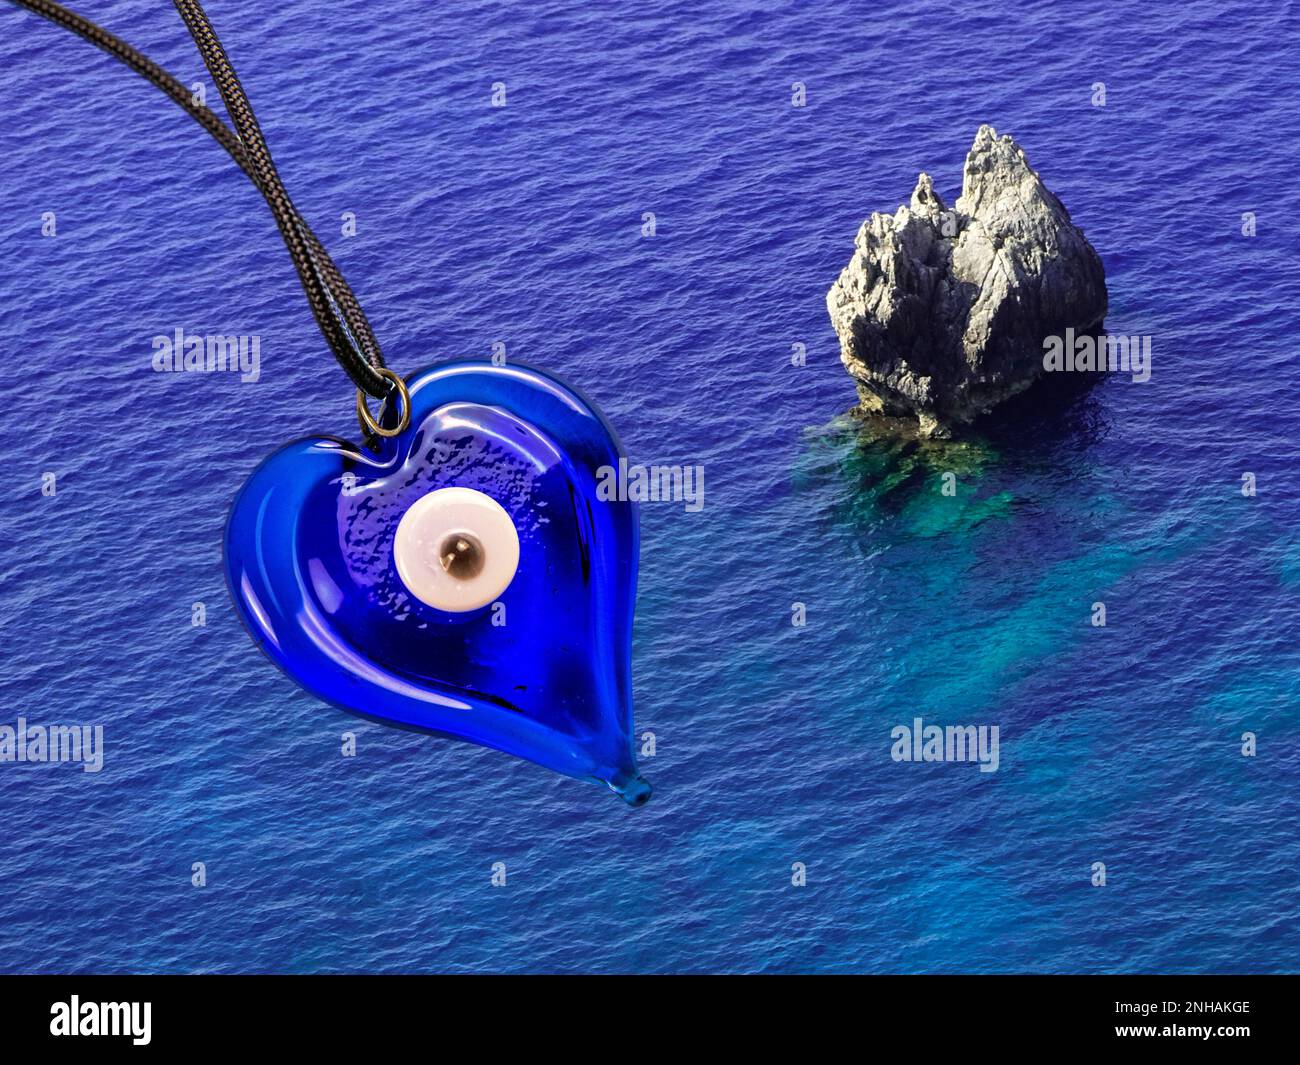 Occhio blu come cham fortunato contro l'acqua di mare blu profondo Foto Stock